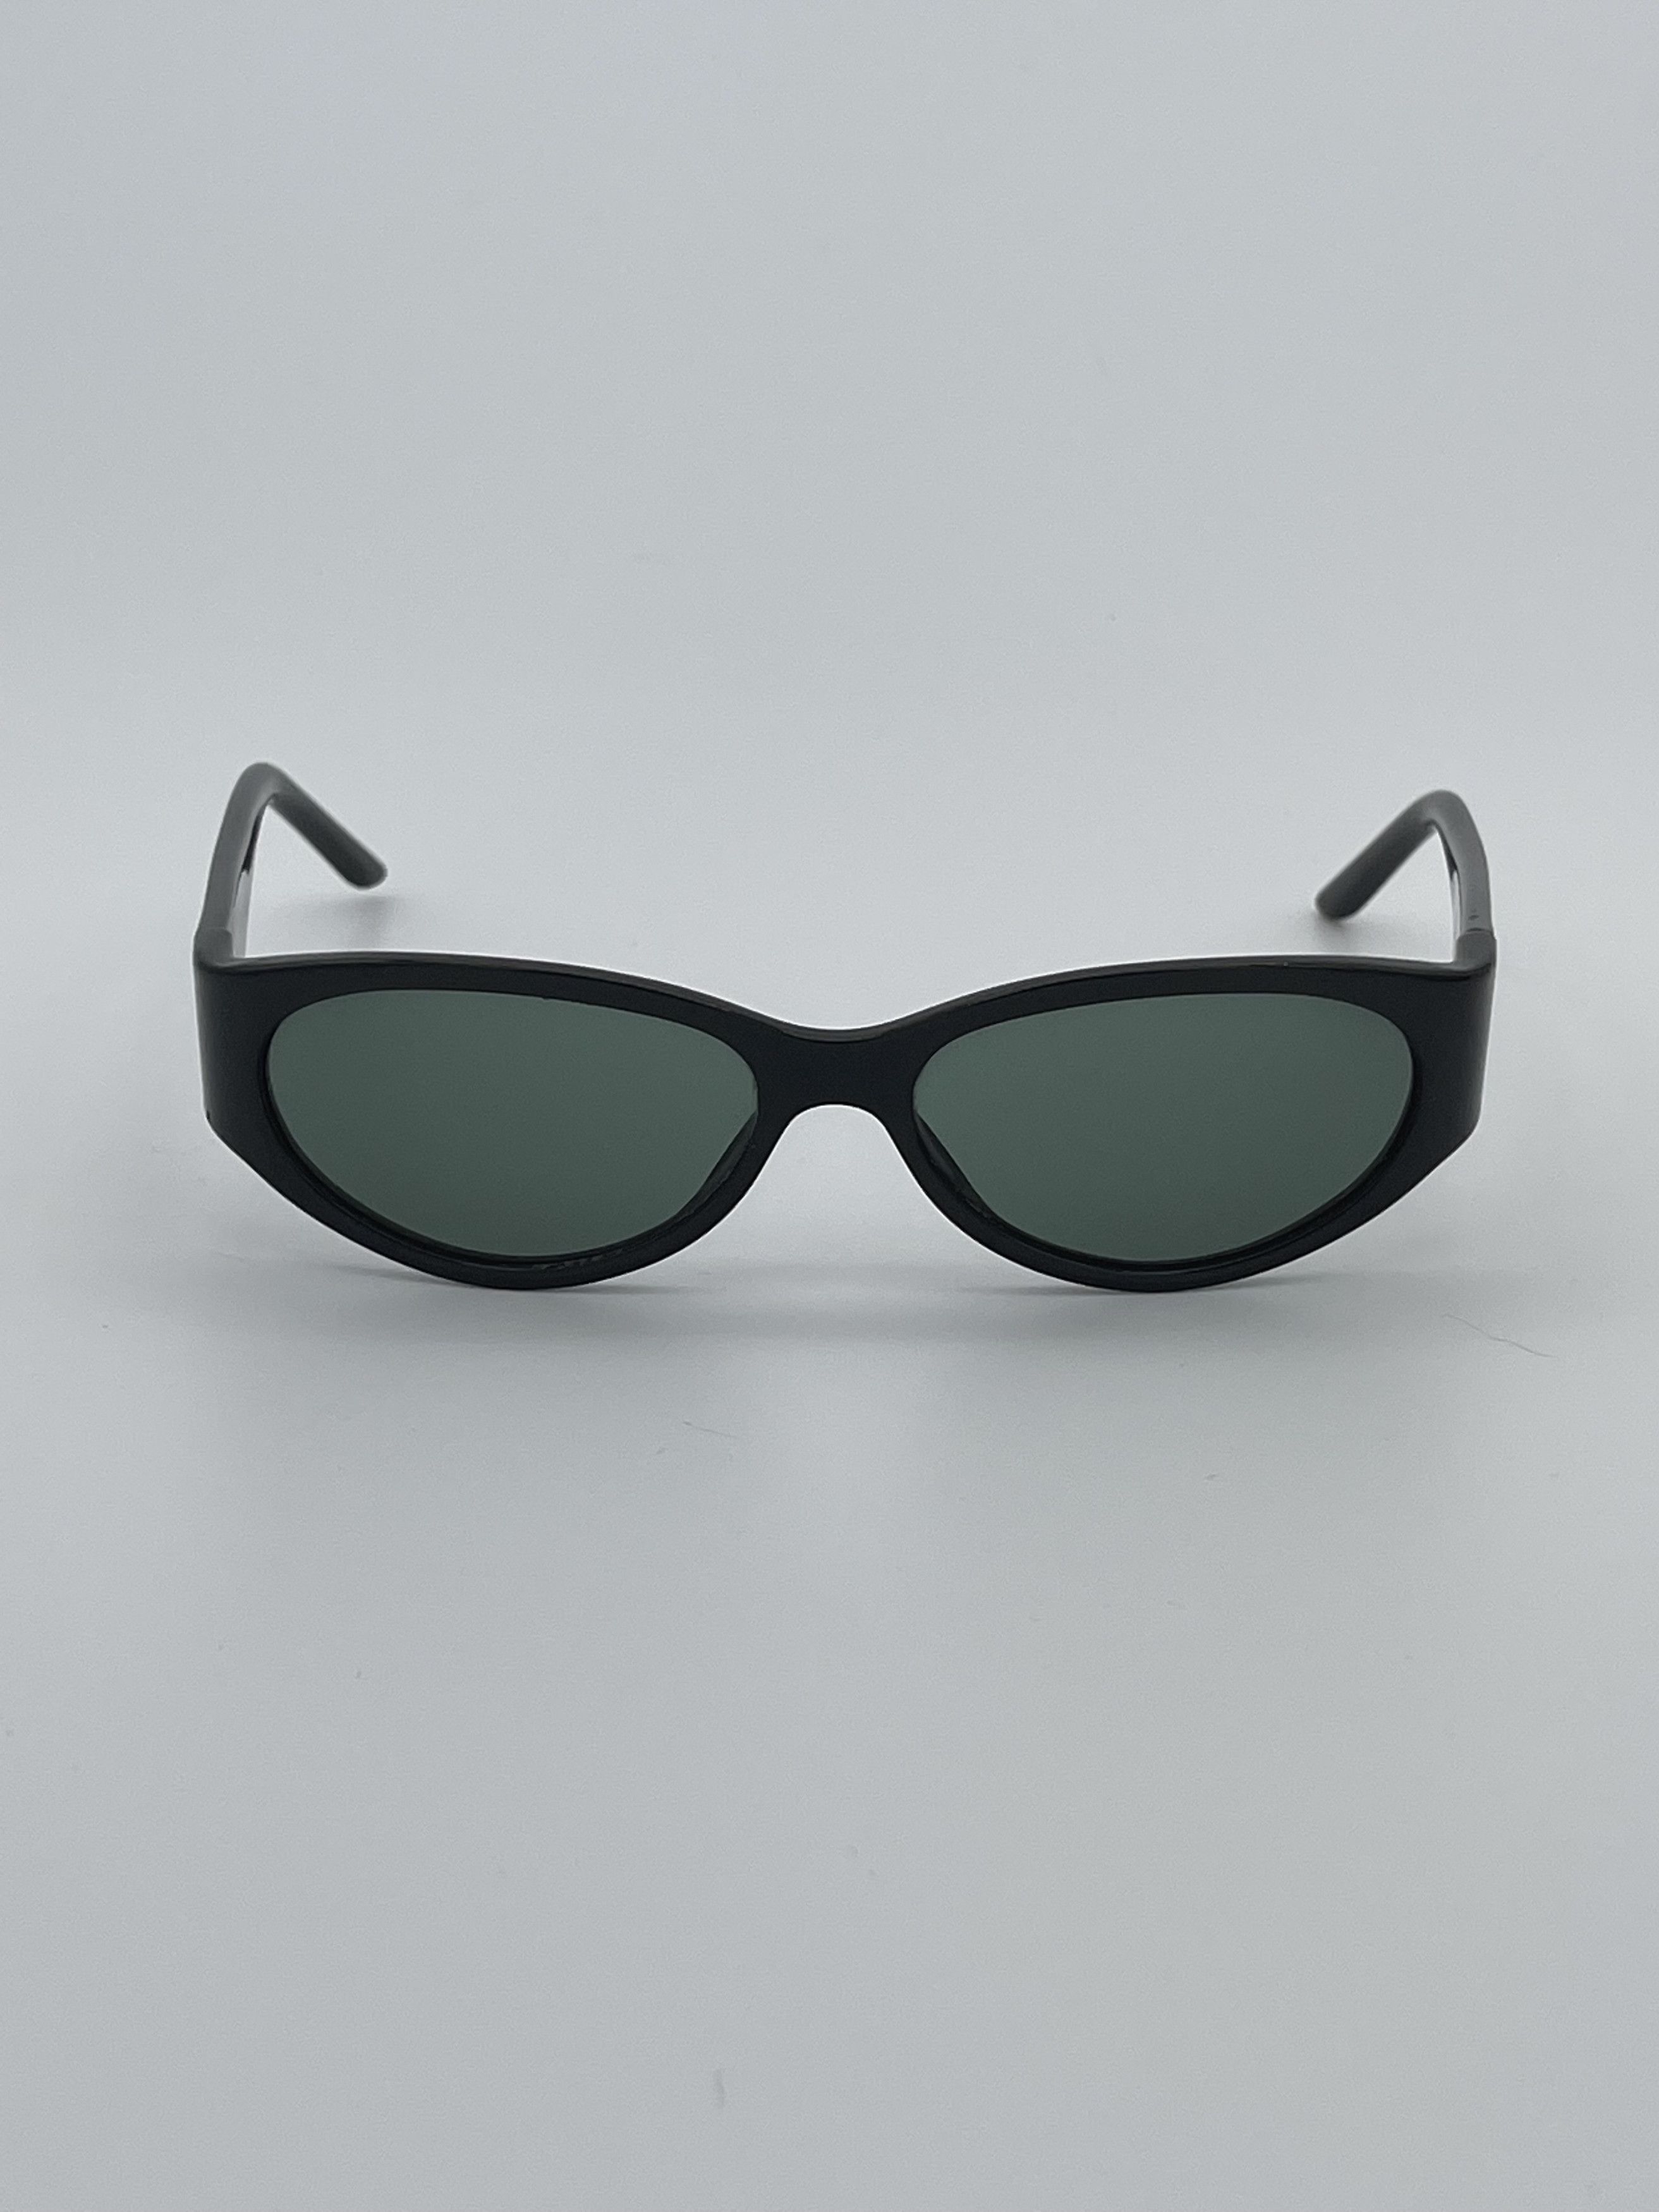 Gucci Rare Vintage Gucci Black Sunglasses Size ONE SIZE - 2 Preview